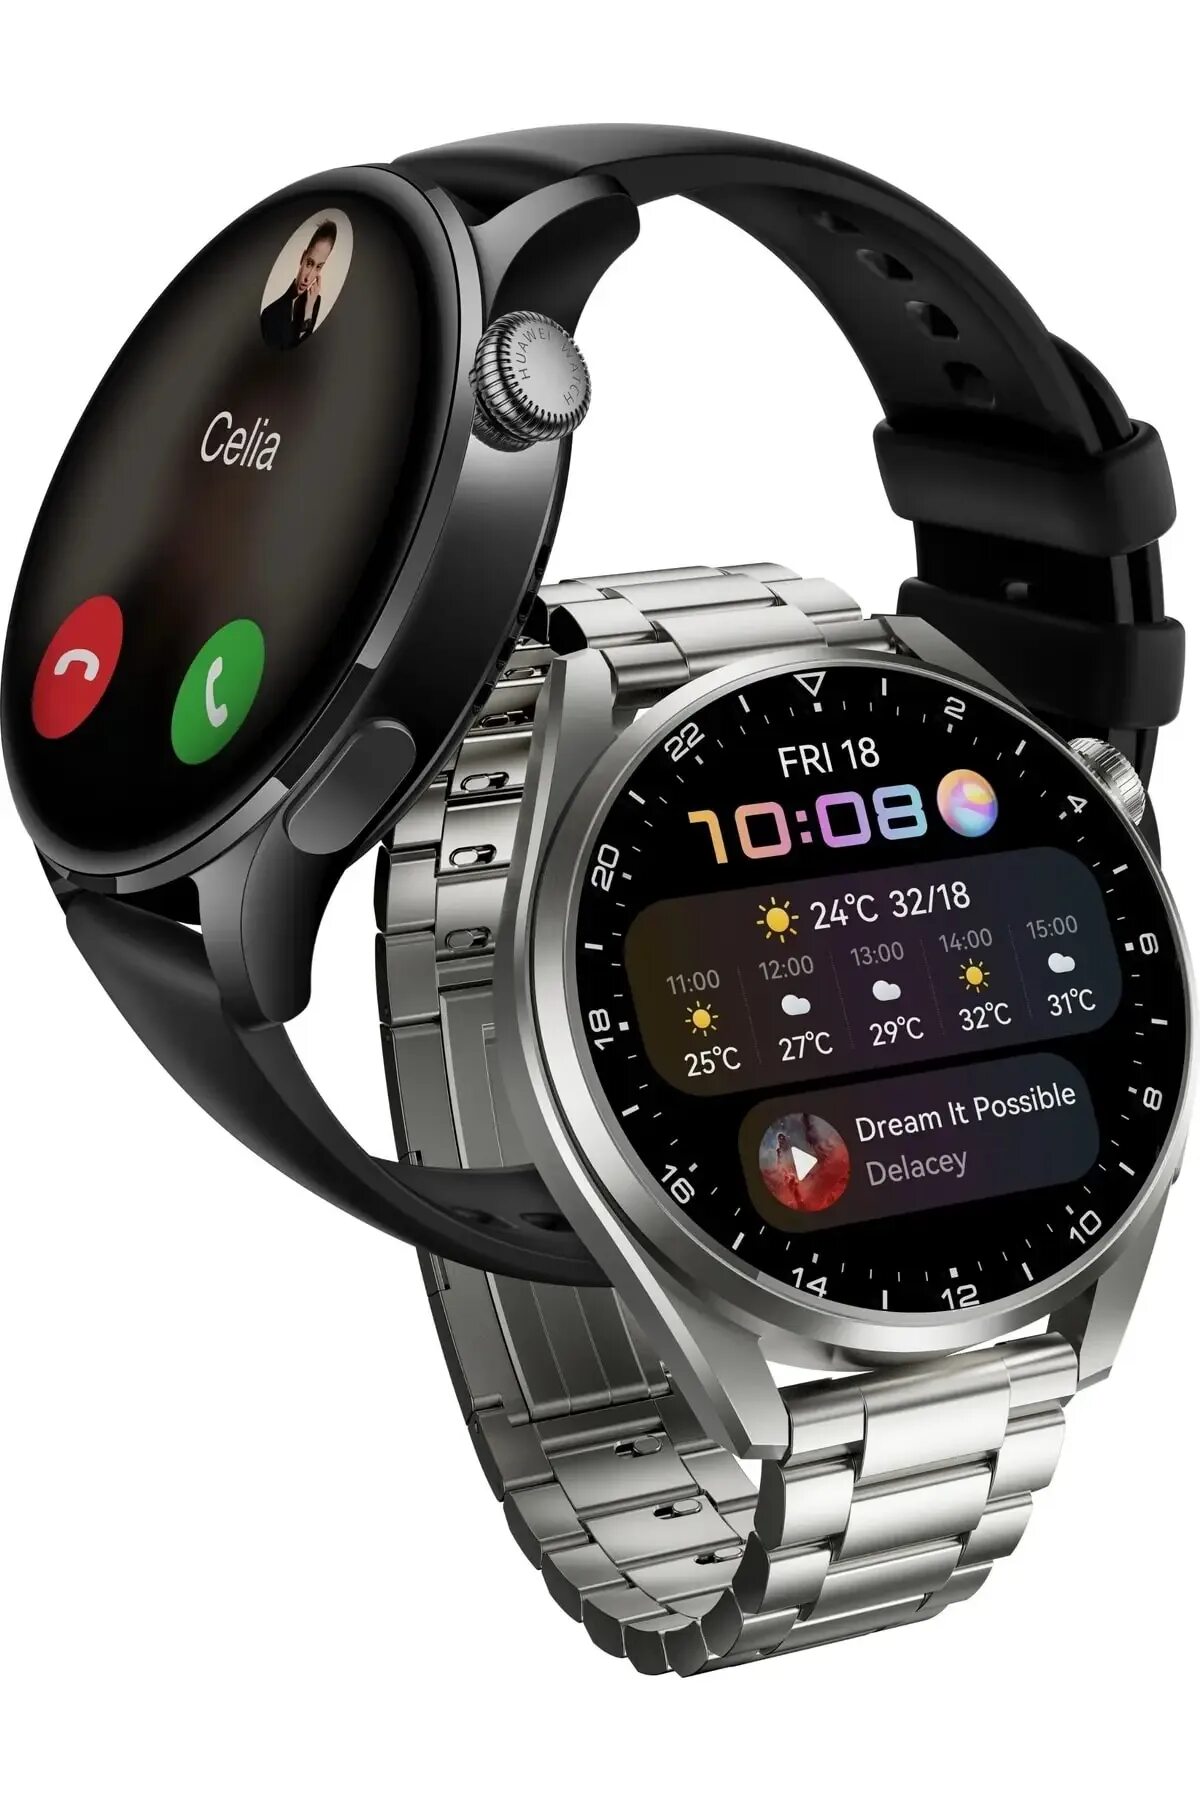 Смарт часы Хуавей вотч gt 3. Смарт-часы Хуавей gt3 Pro. Часы Huawei gt3 Pro. Часы Хуавей gt3. Huawei watch gt 3 nfc